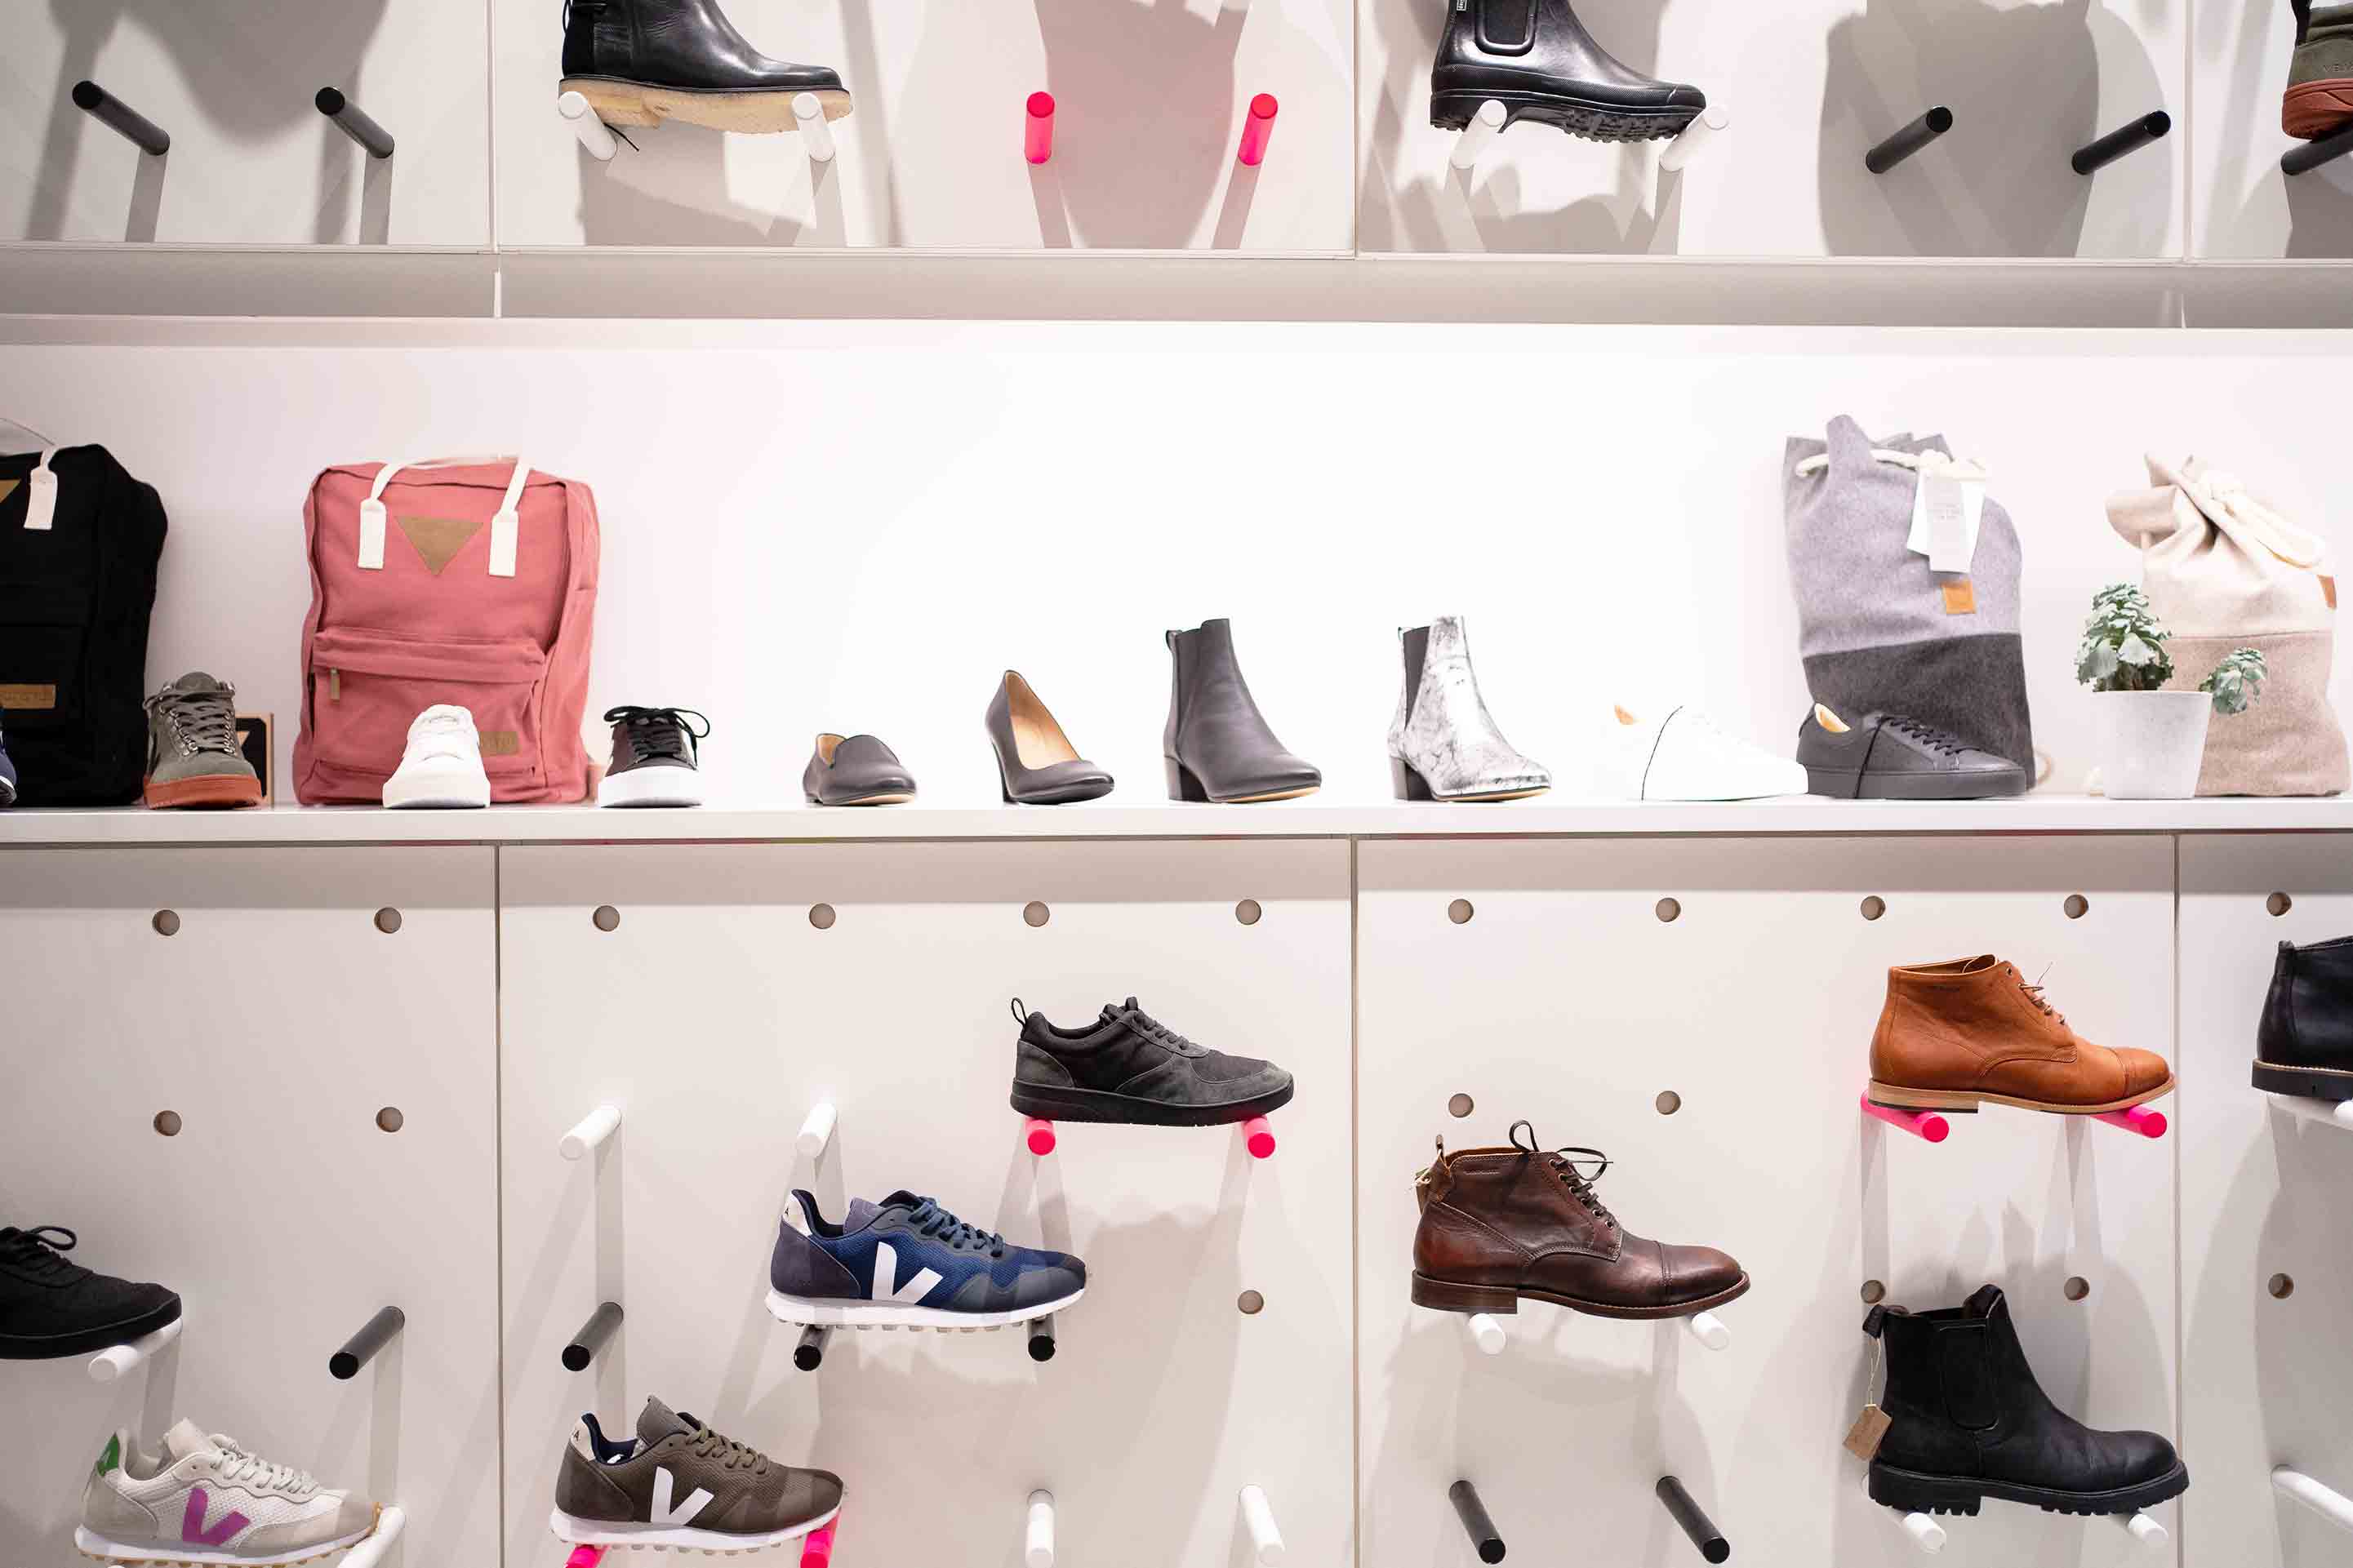 Steckregal in weiß, schwarz und pink zur Präsentation der verschiedenen, nachhaltigen Schuhmodelle, wie Sneaker, Winterstiefel und auch Rucksäcke und Seesäcke